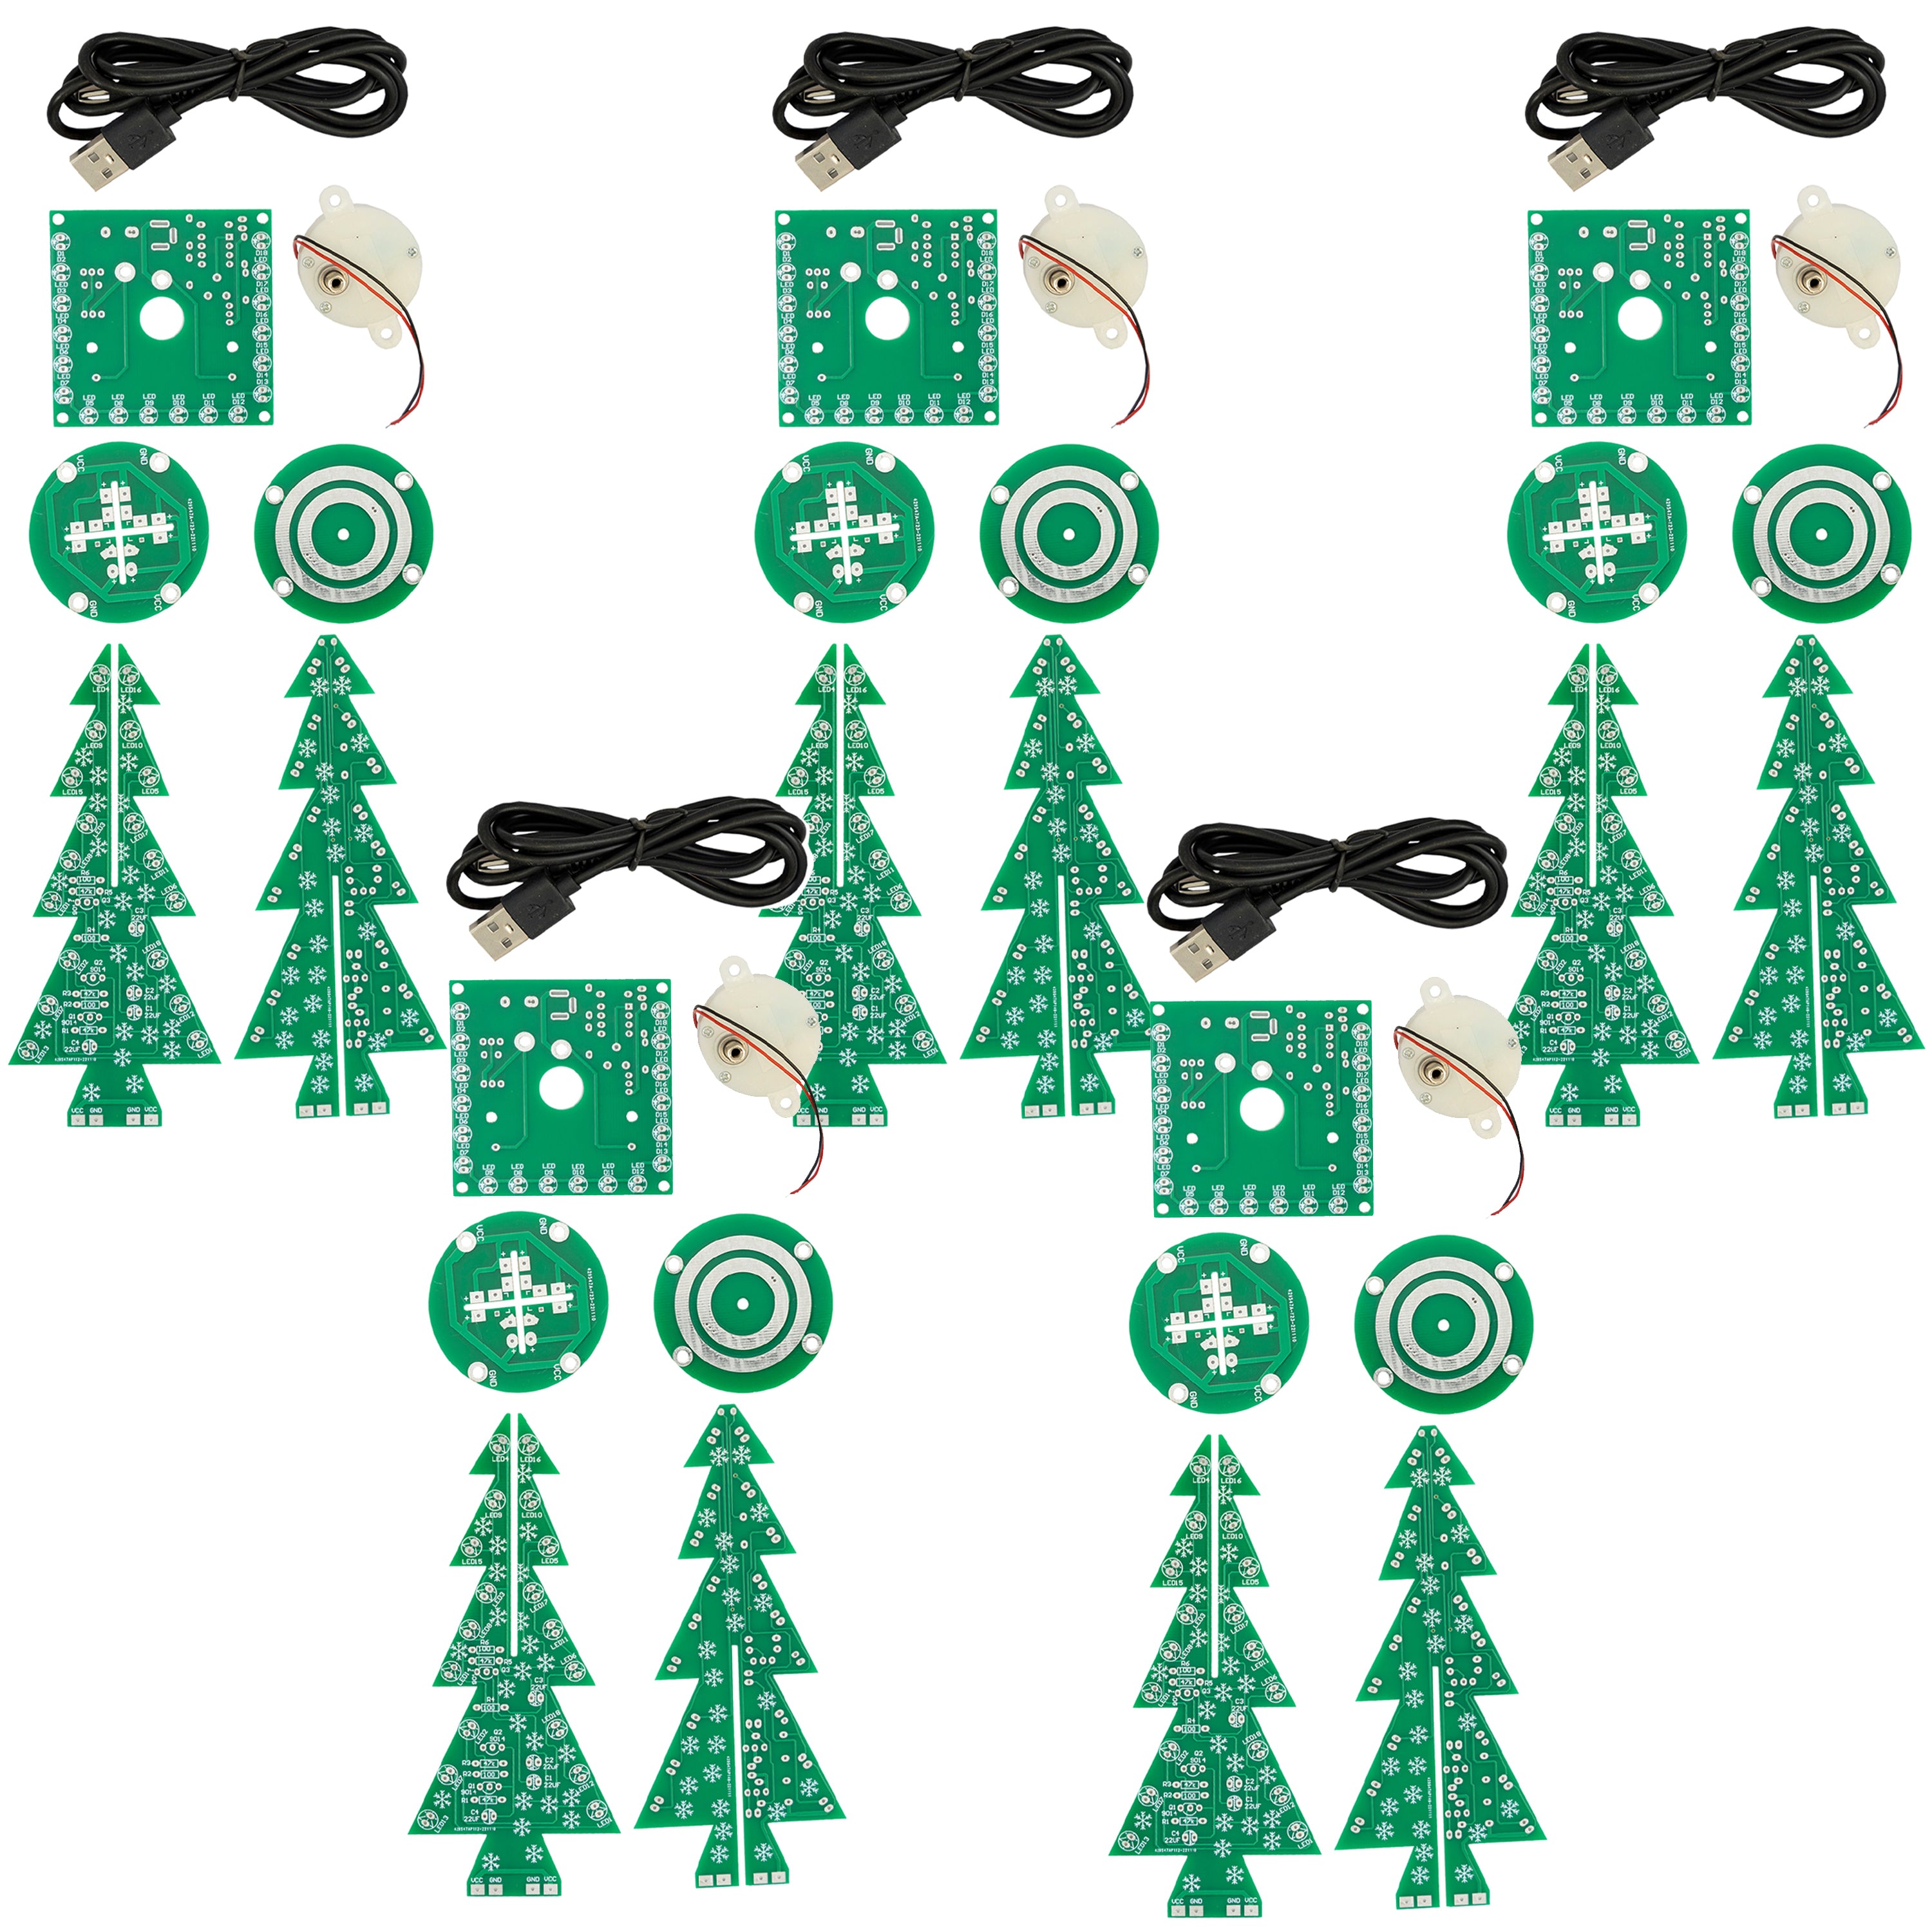 DIY LED Christmas Tree Kit : Kit électronique pour arbre de Noël à souder - Kit de soudure pour un arbre de Noël tournant avec LED et connexion USB